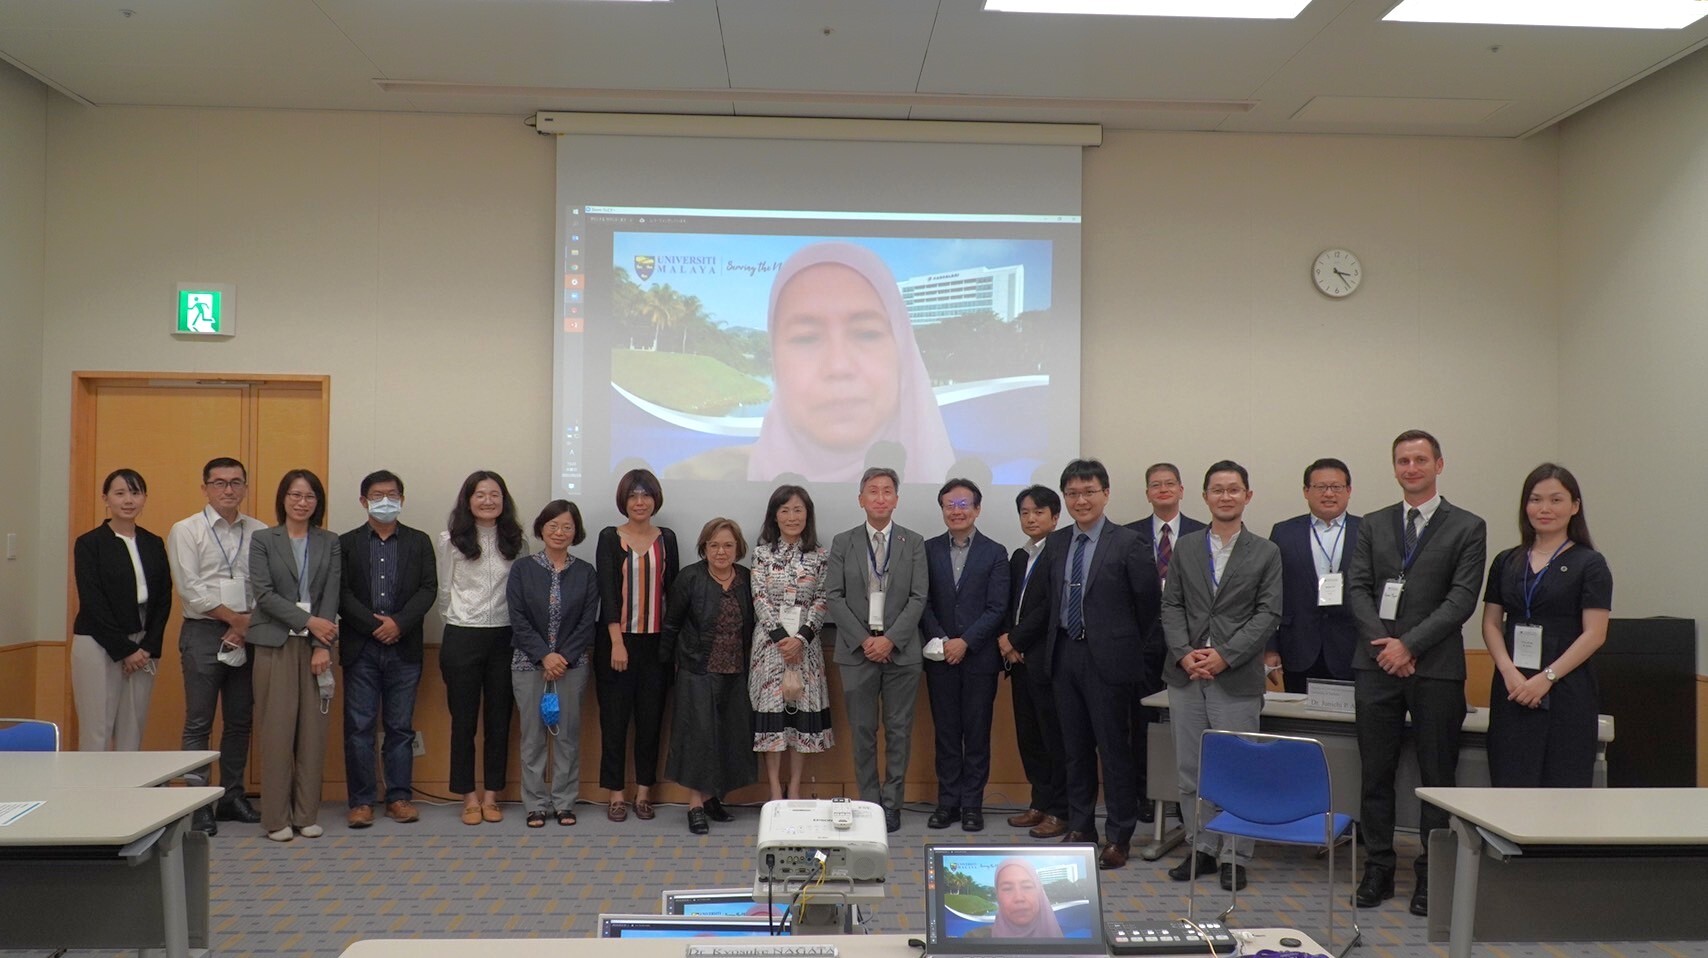 國立成功大學校長蘇慧貞 (右 9) 9 月 29 日獲邀至日本筑波大學參與每年一度的「筑波全球科學週」活動